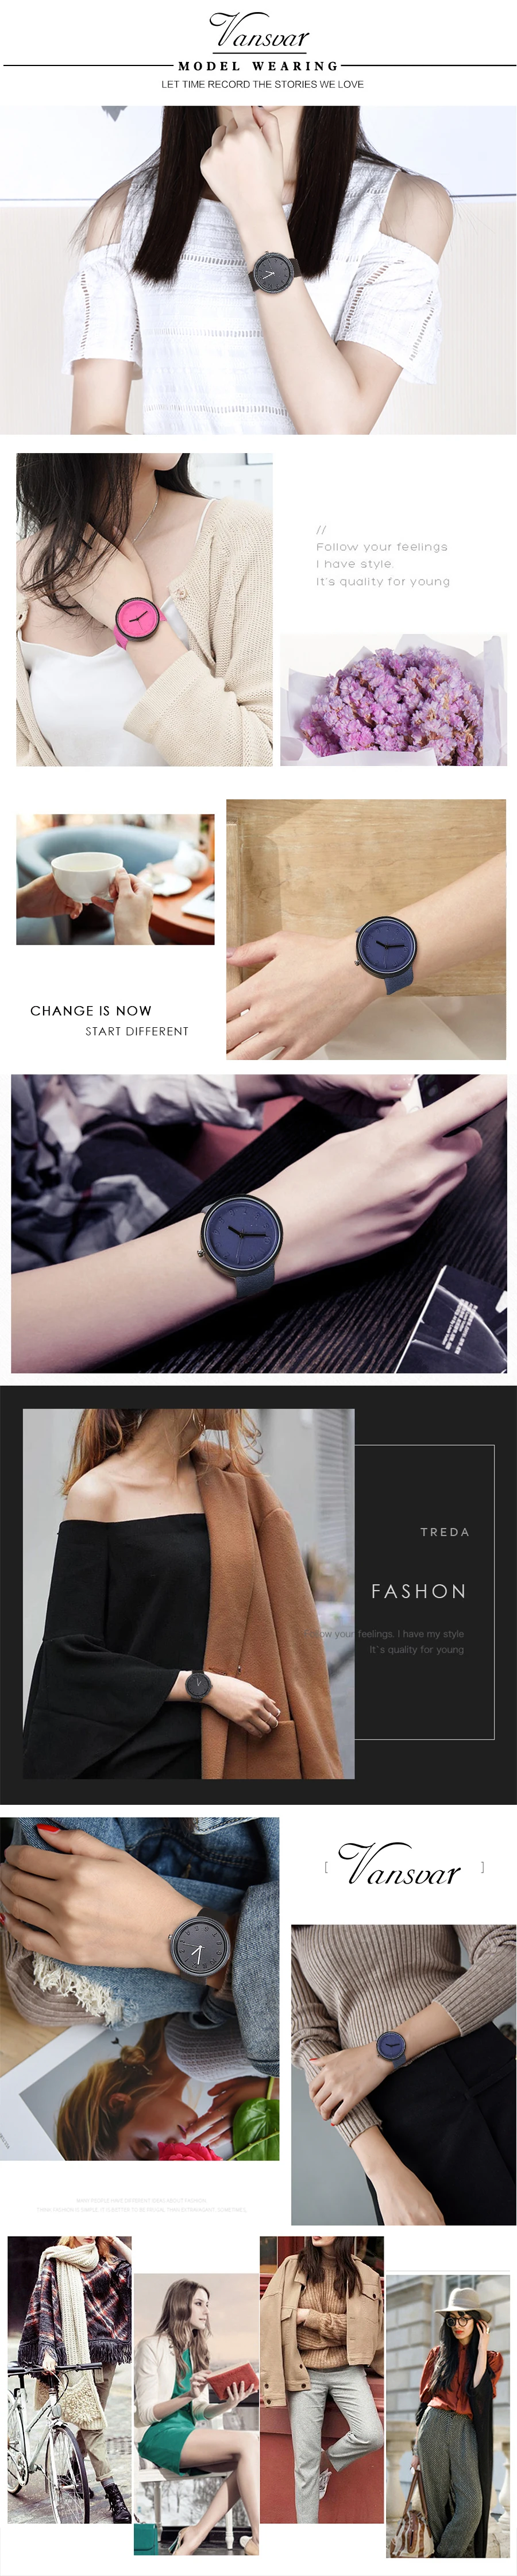 Vansvar брендовые Модные Простые Стильные женские часы из искусственной кожи, кварцевые наручные часы Relogio Feminino, Прямая поставка